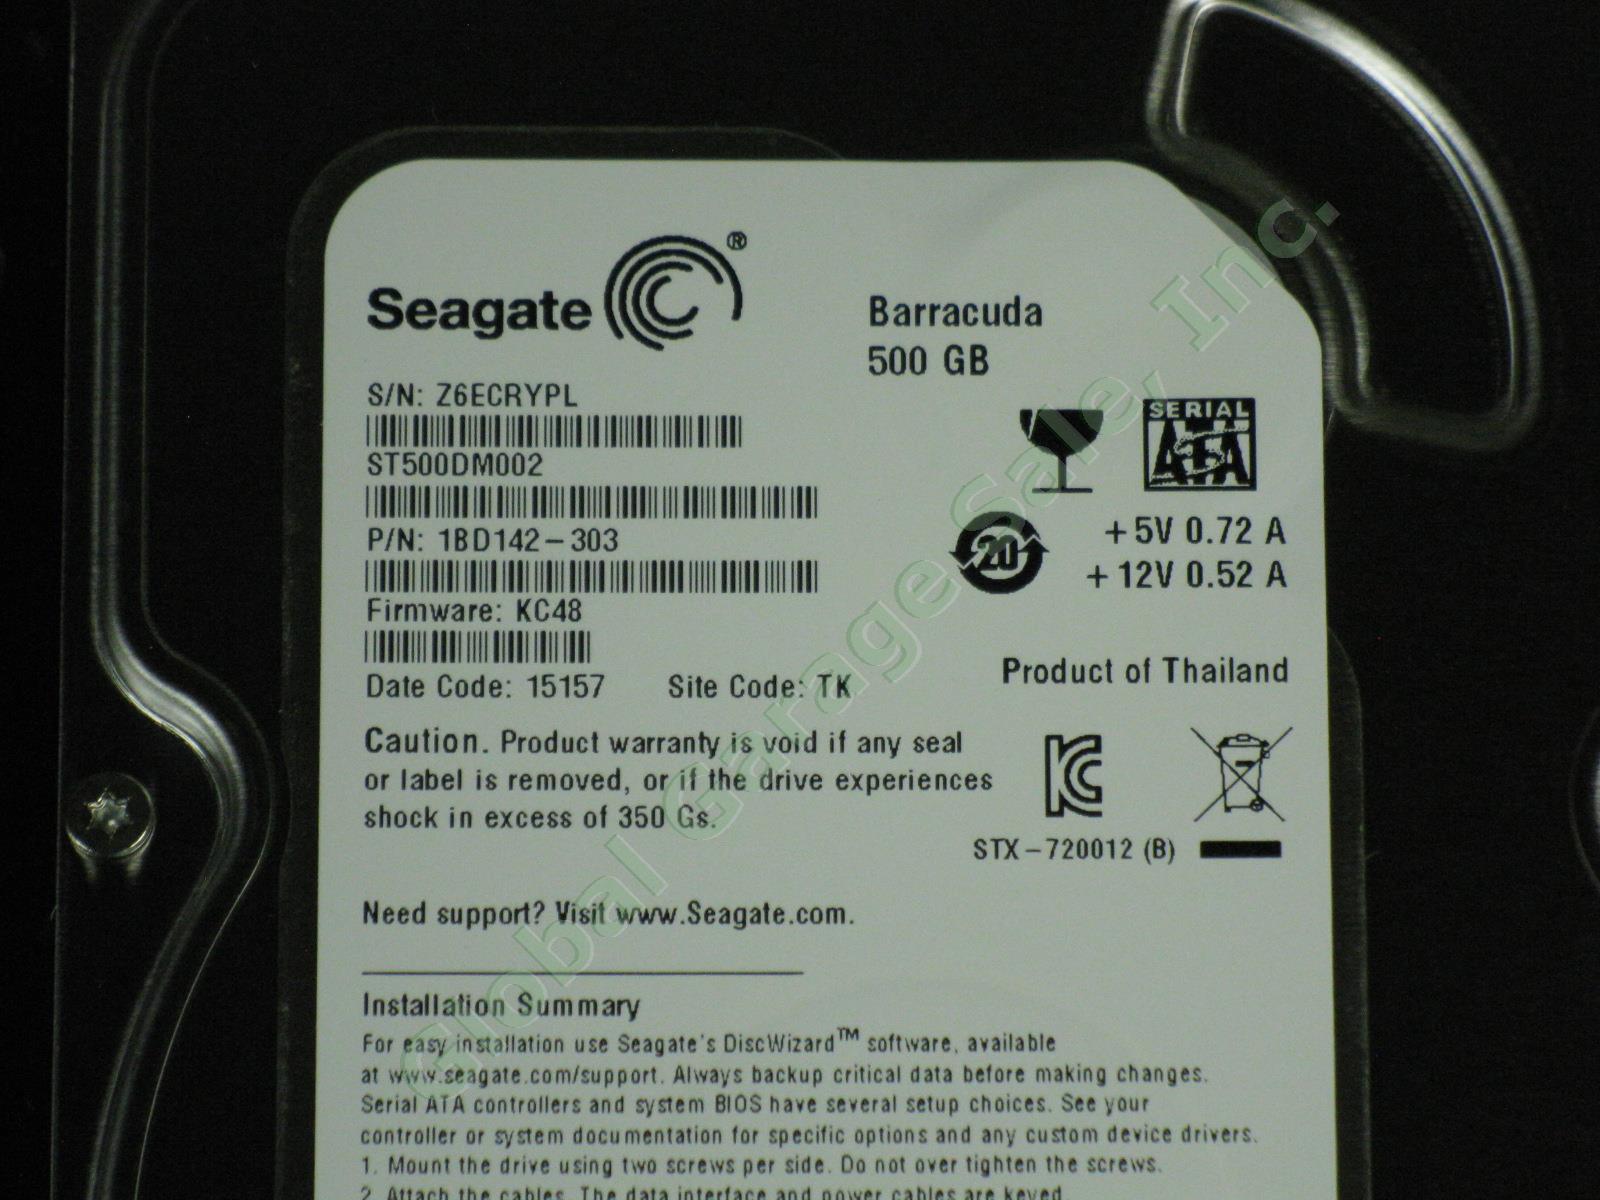 10 NEW Seagate Barracuda 500GB 7200RPM 3.5" HDD Hard Drives Lot ST500DM002 NR! 1